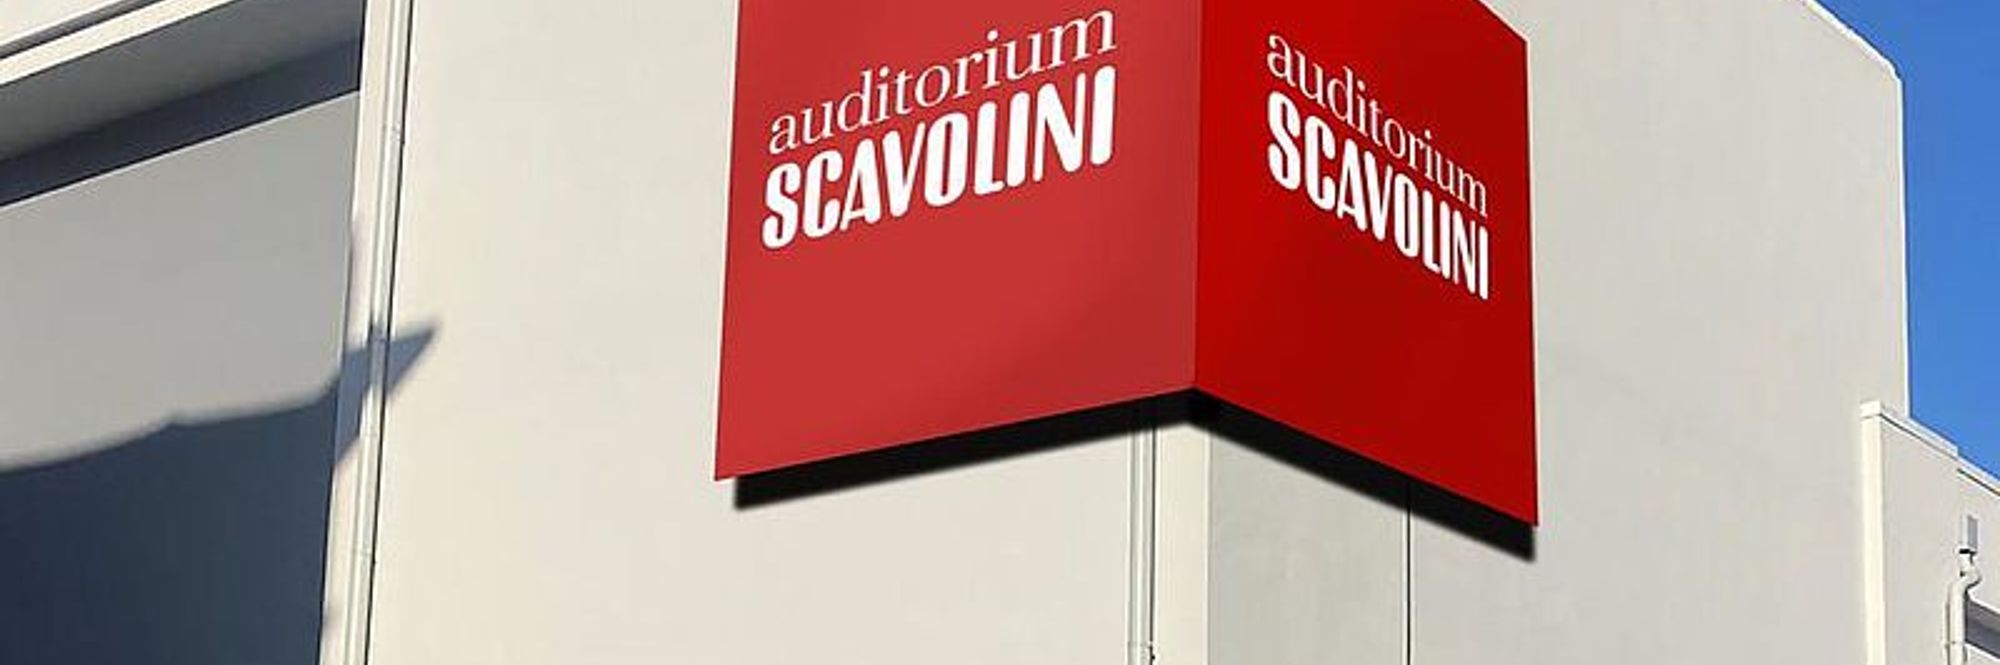 Auditorium Scavolini